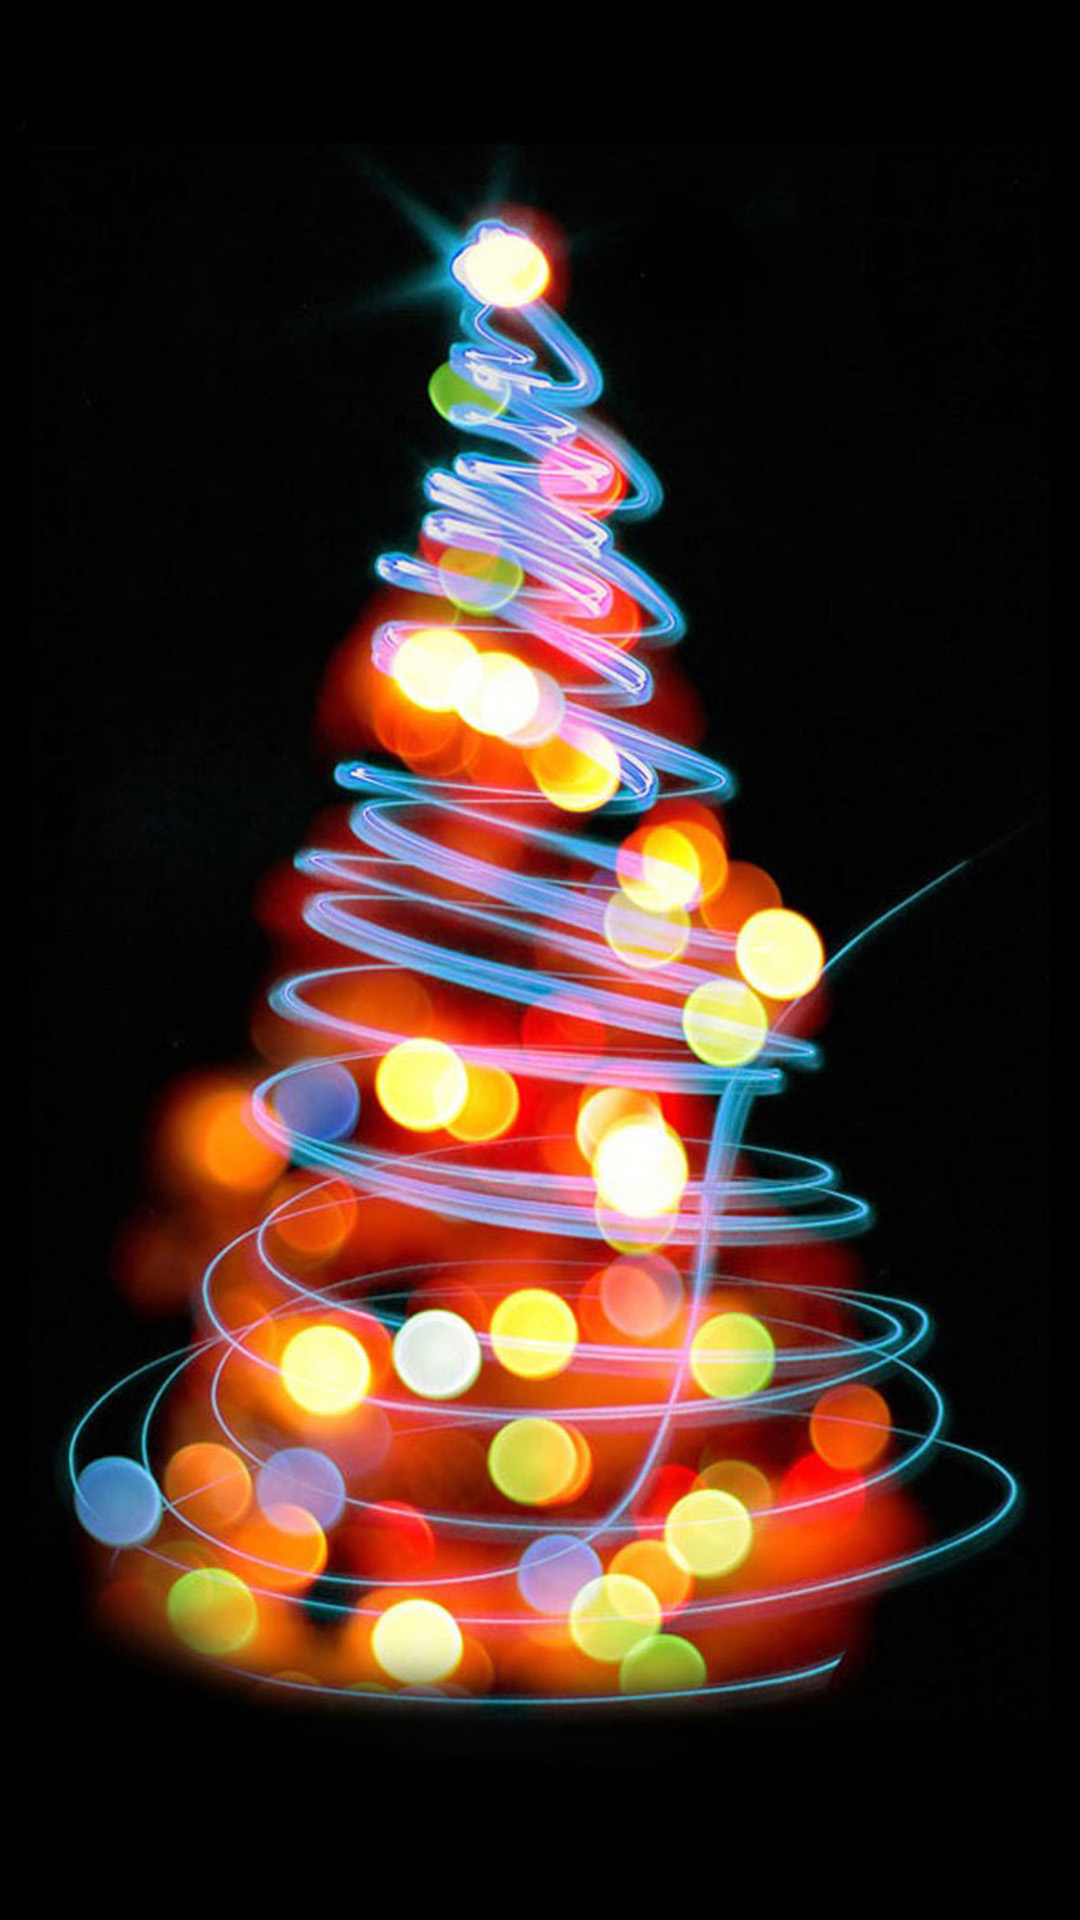 weihnachten wallpaper hd iphone,weihnachtsbaum,weihnachtsdekoration,weihnachtsbeleuchtung,baum,licht